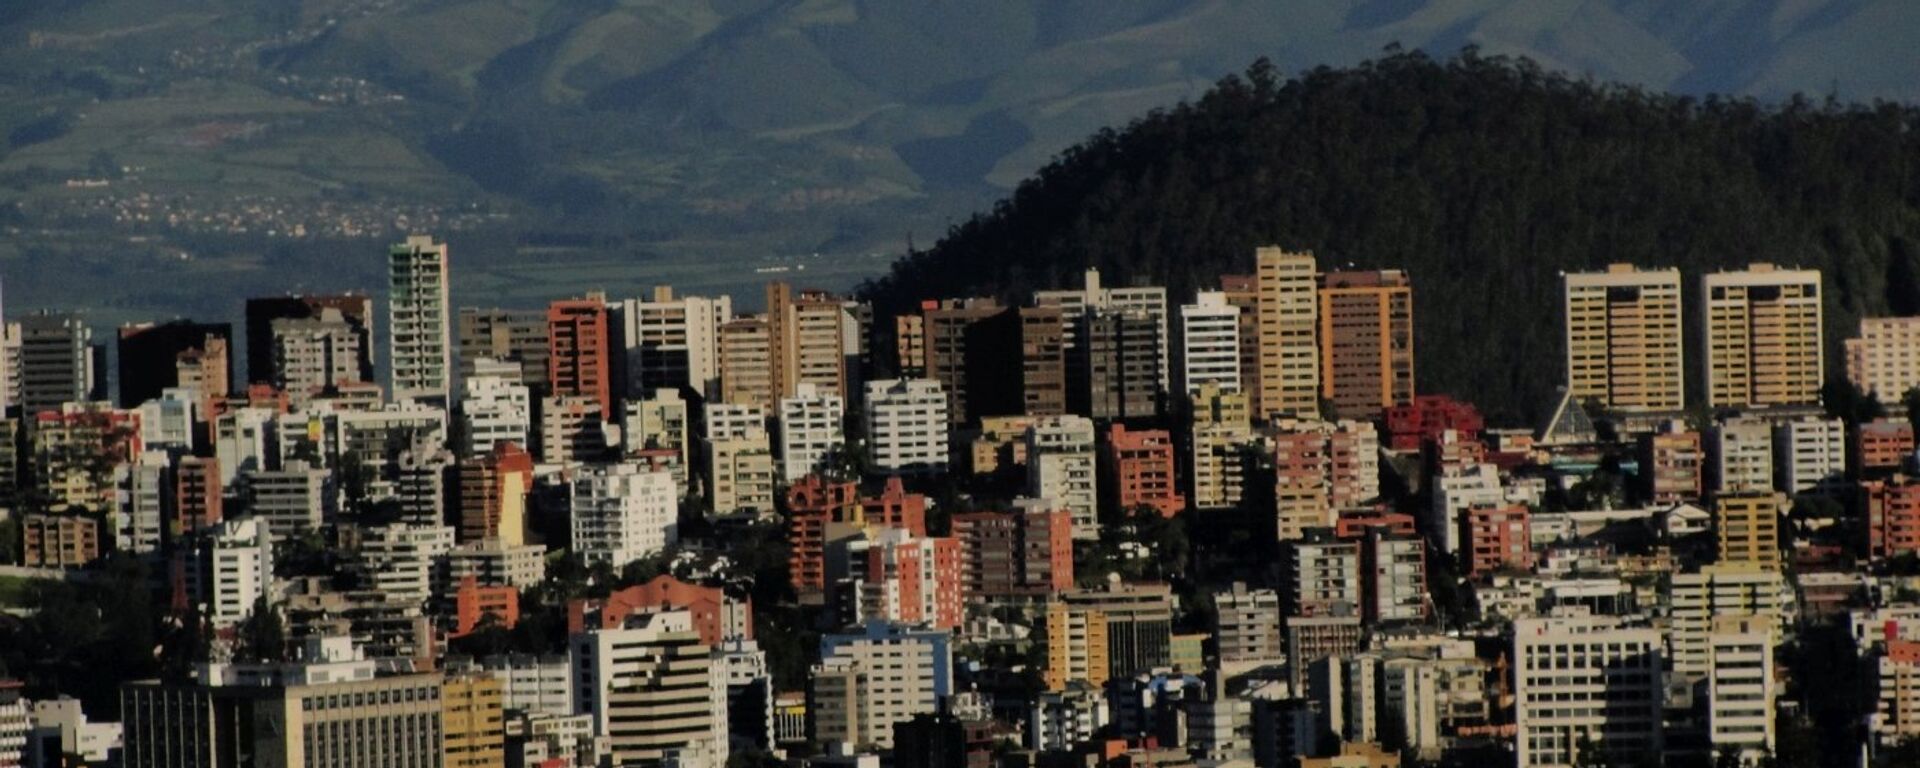 Quito, la capital de Ecuador - Sputnik Mundo, 1920, 22.09.2021